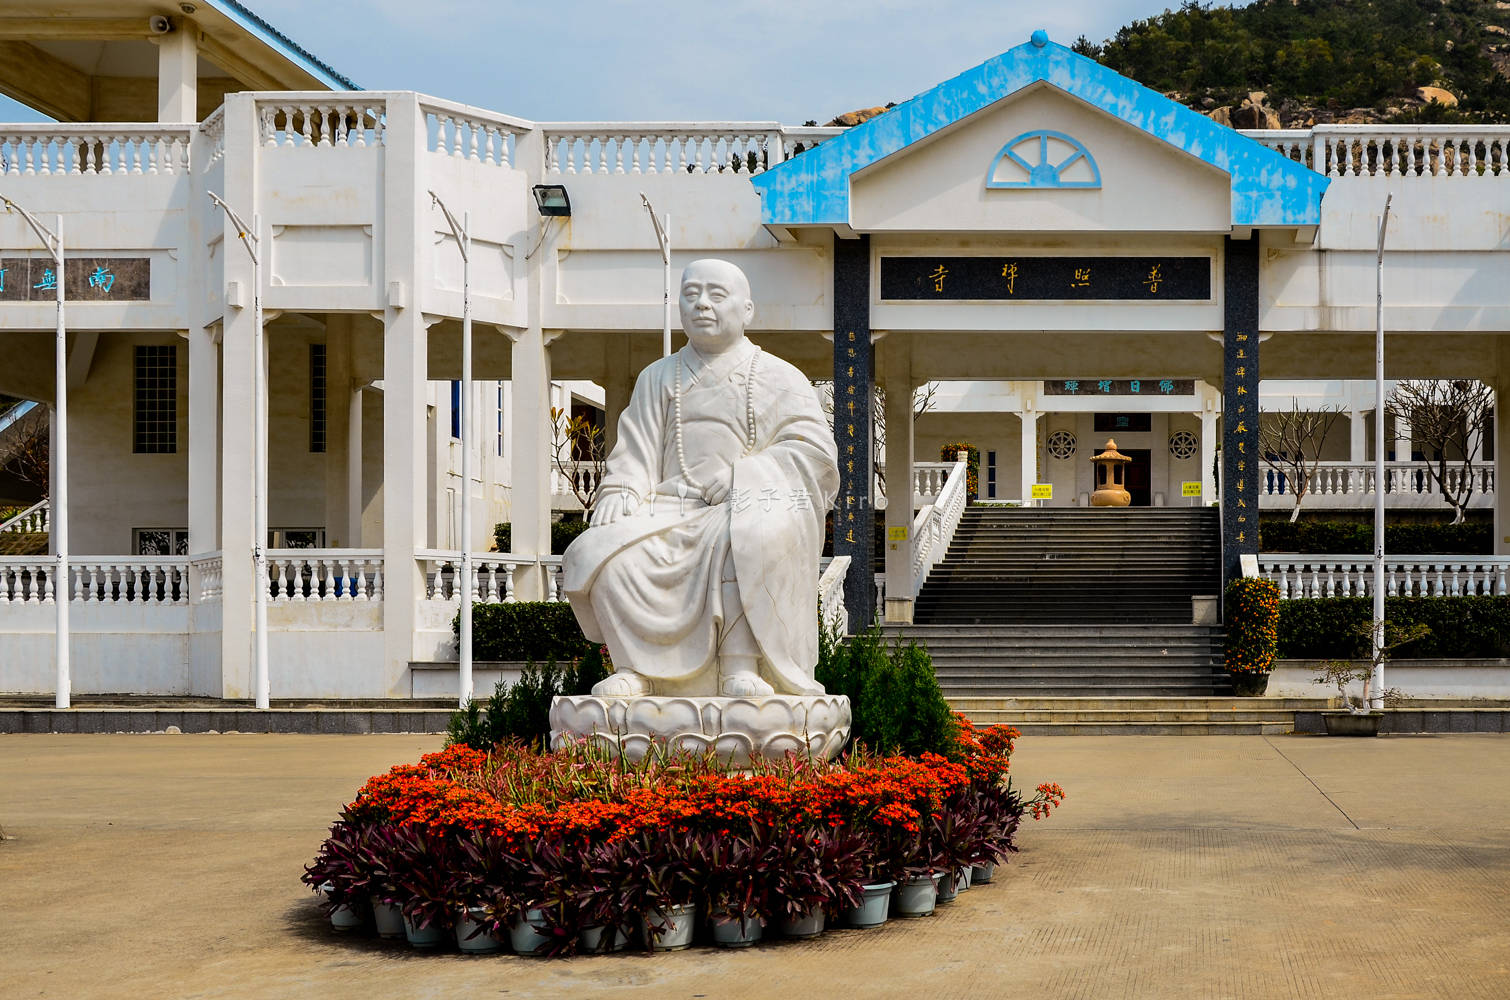 修建漳州龙海普照寺的是一位游历东南亚诸国的高僧释广玄